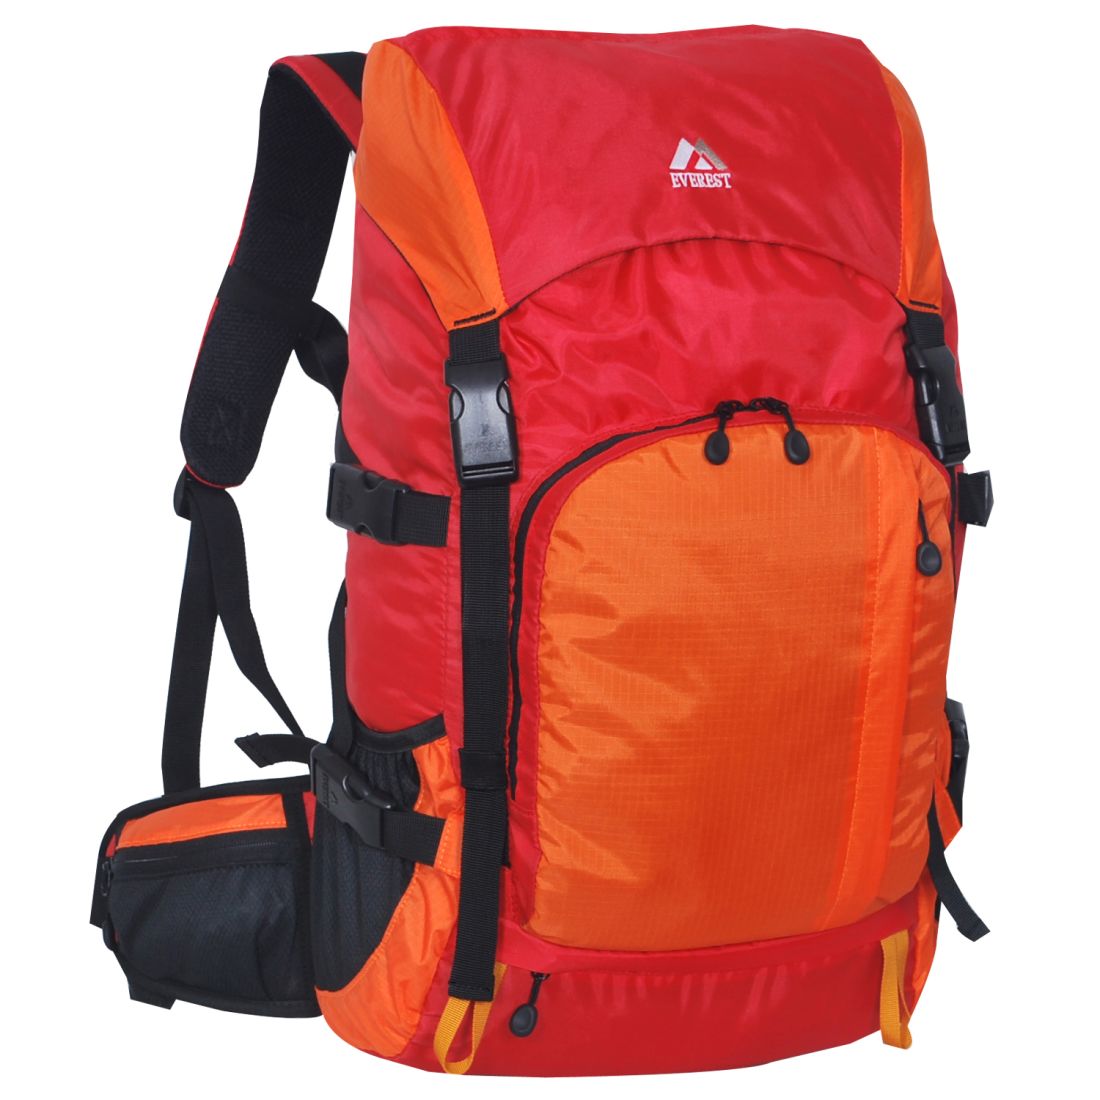 Everest Weekender Hiking Back Pack